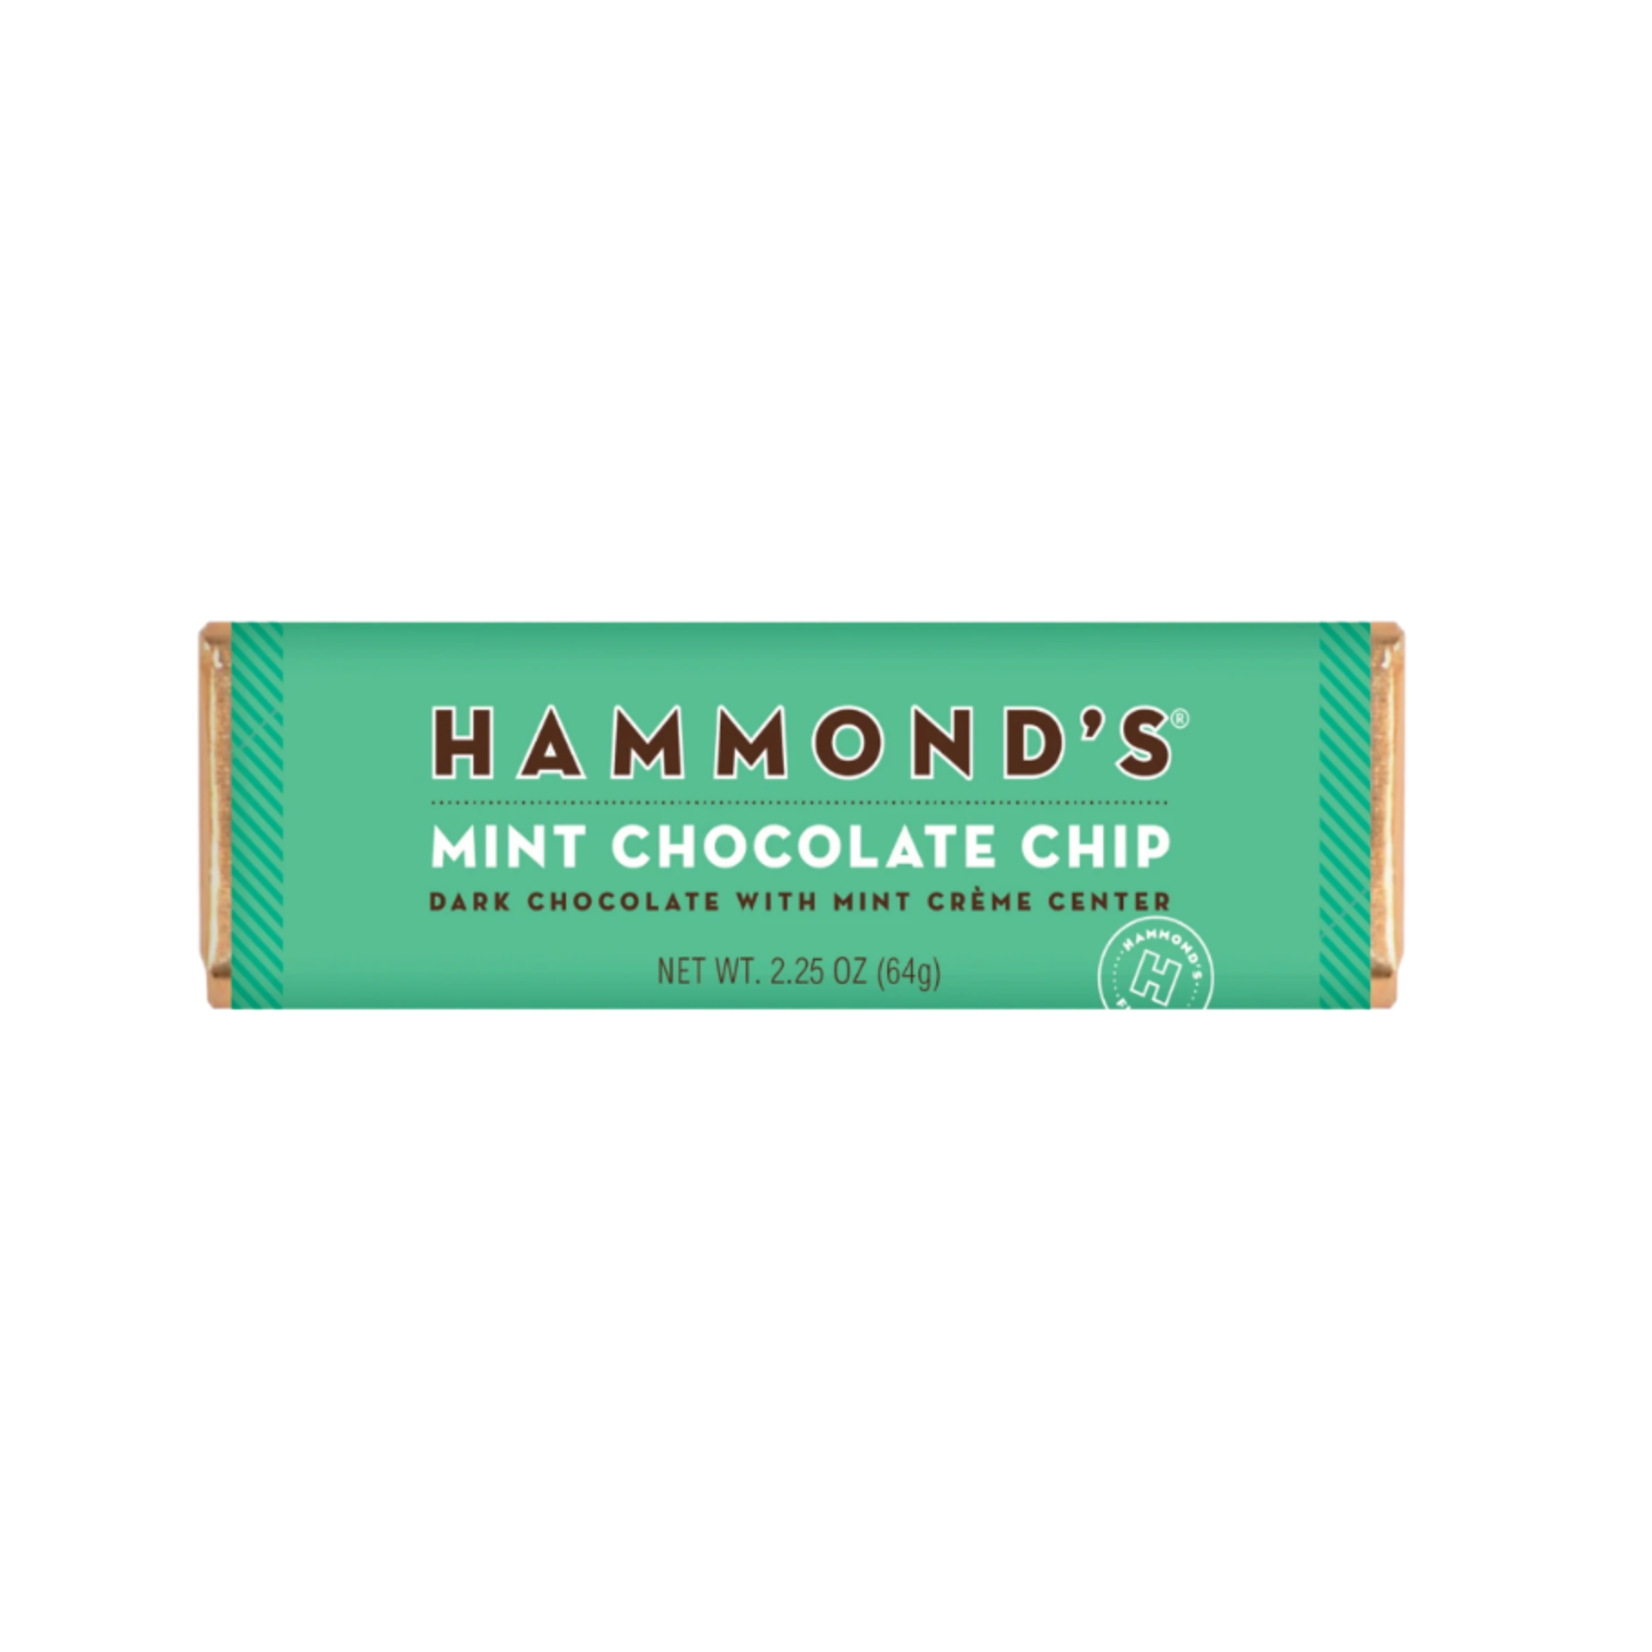 Hammond's Mint Chocolate Chip Choc Bar